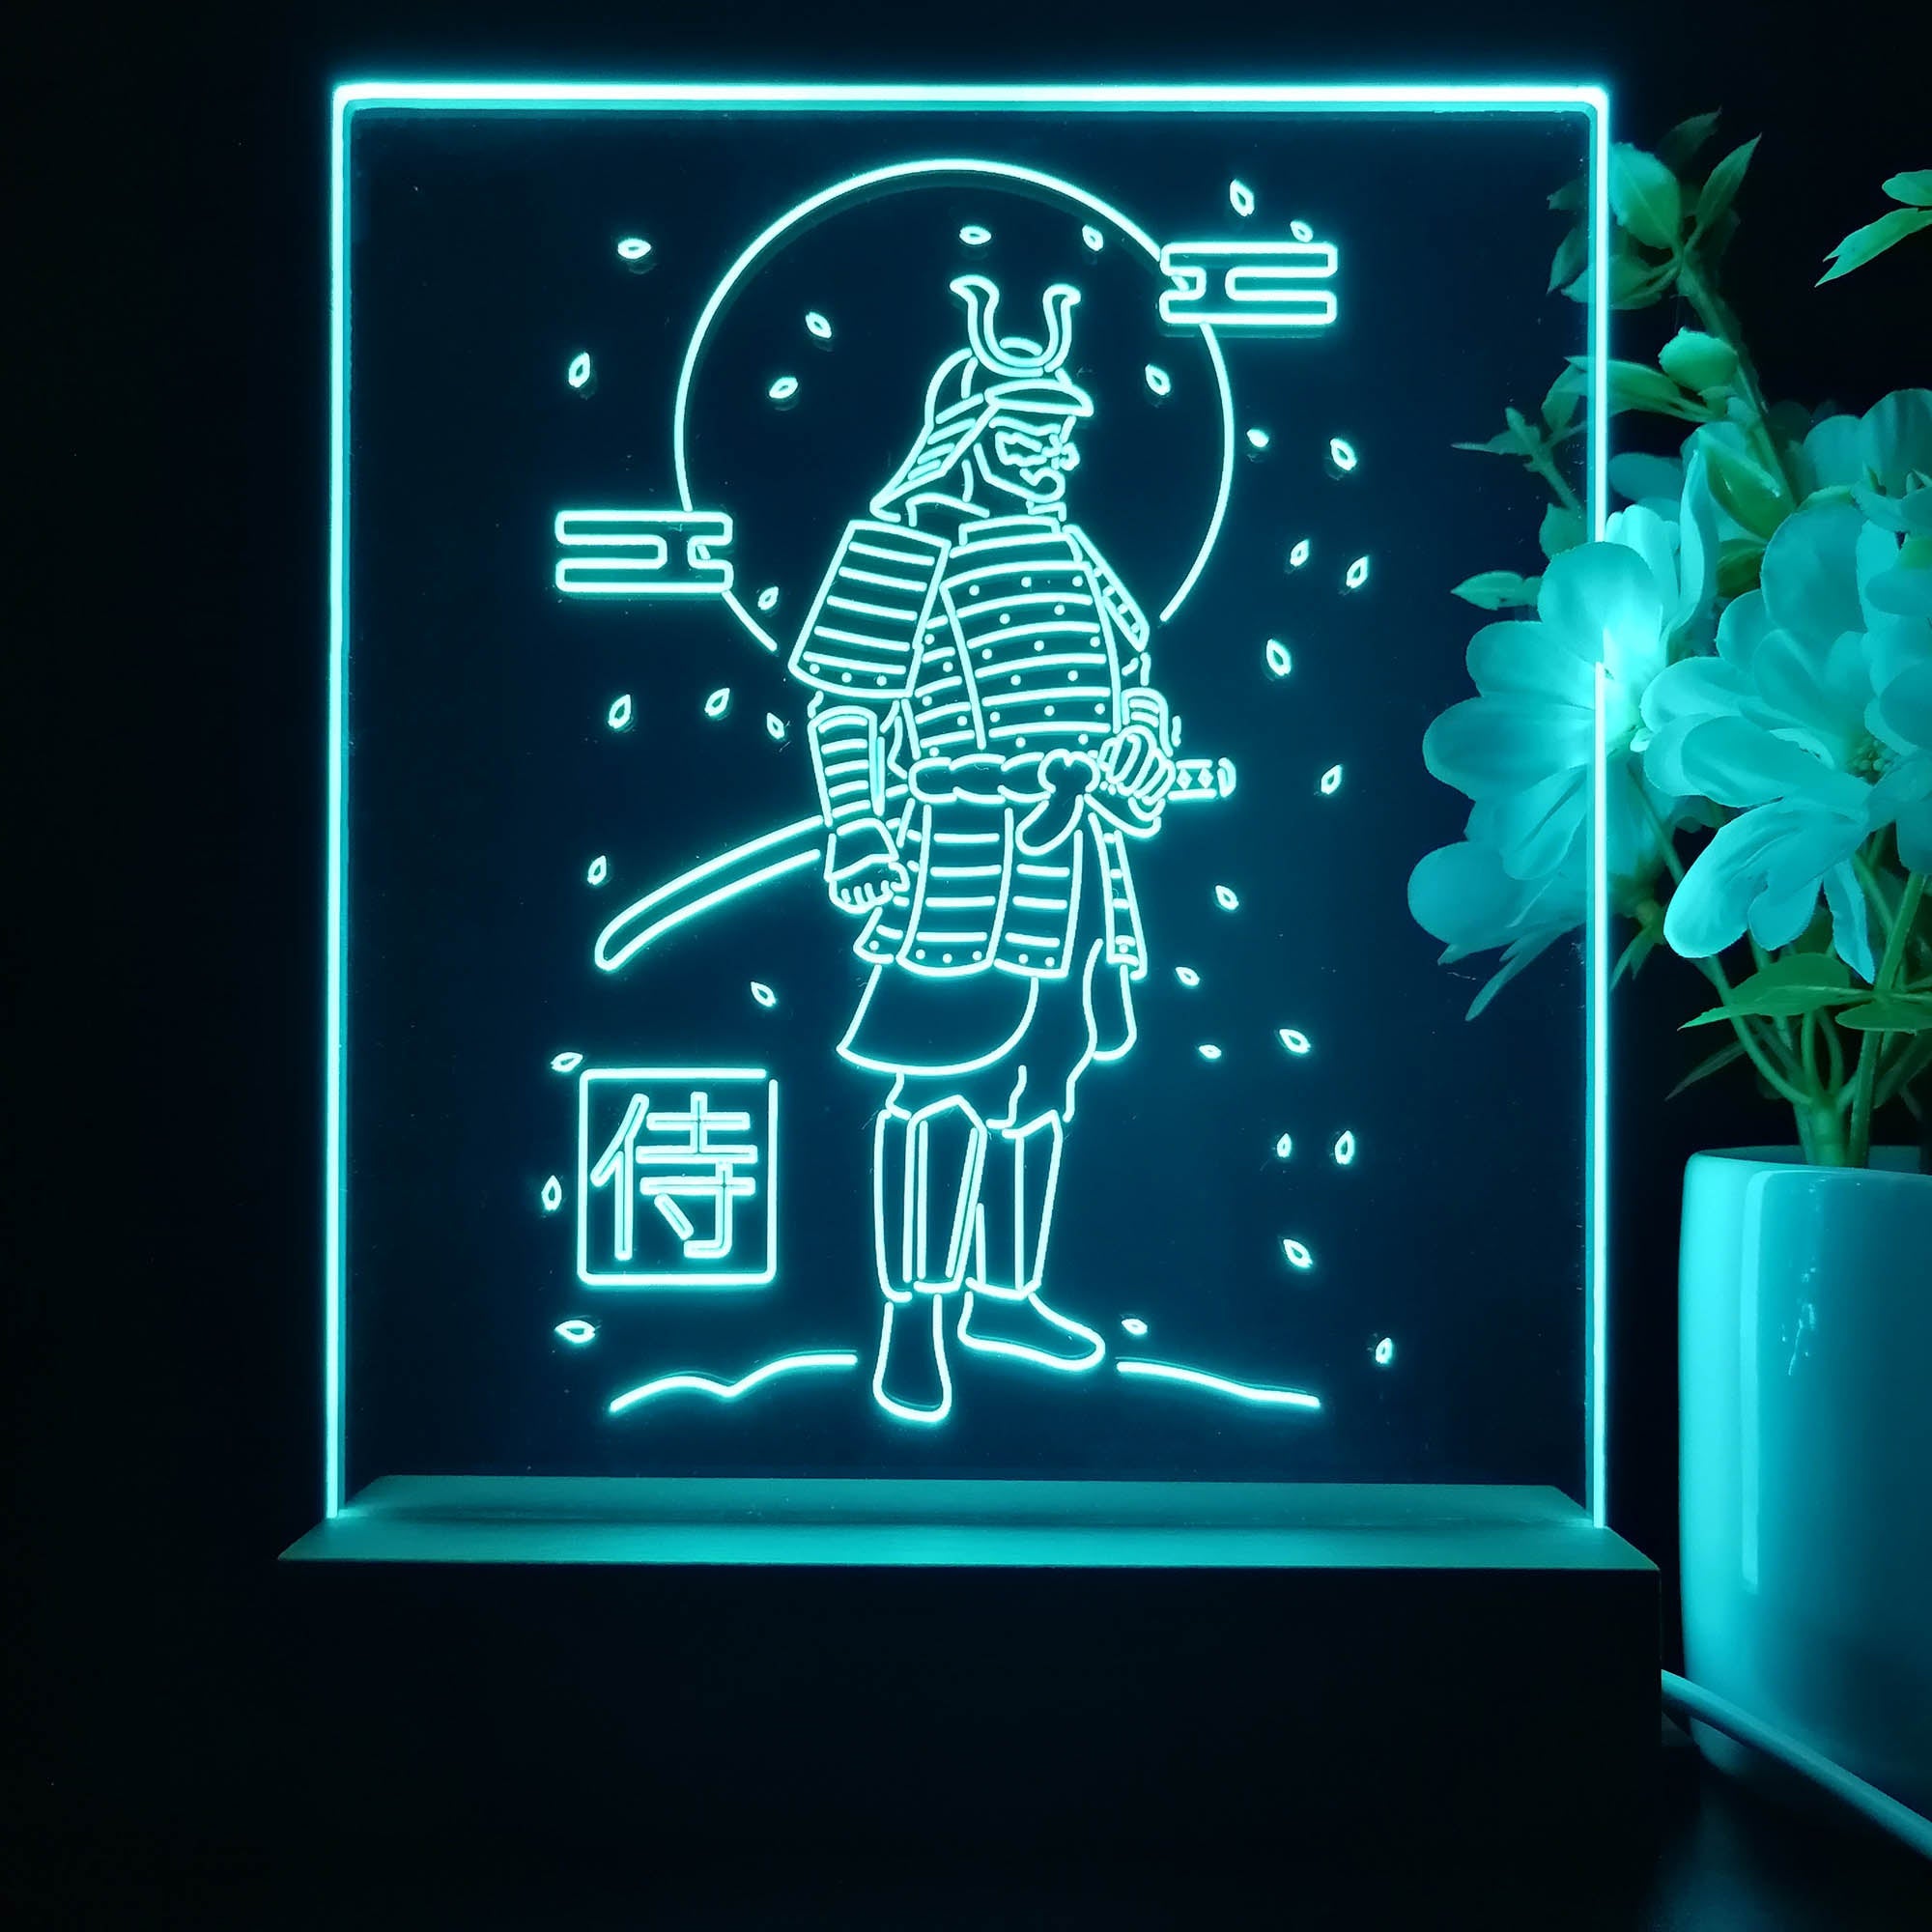 Samurai Game Room LED Sign Lamp Display